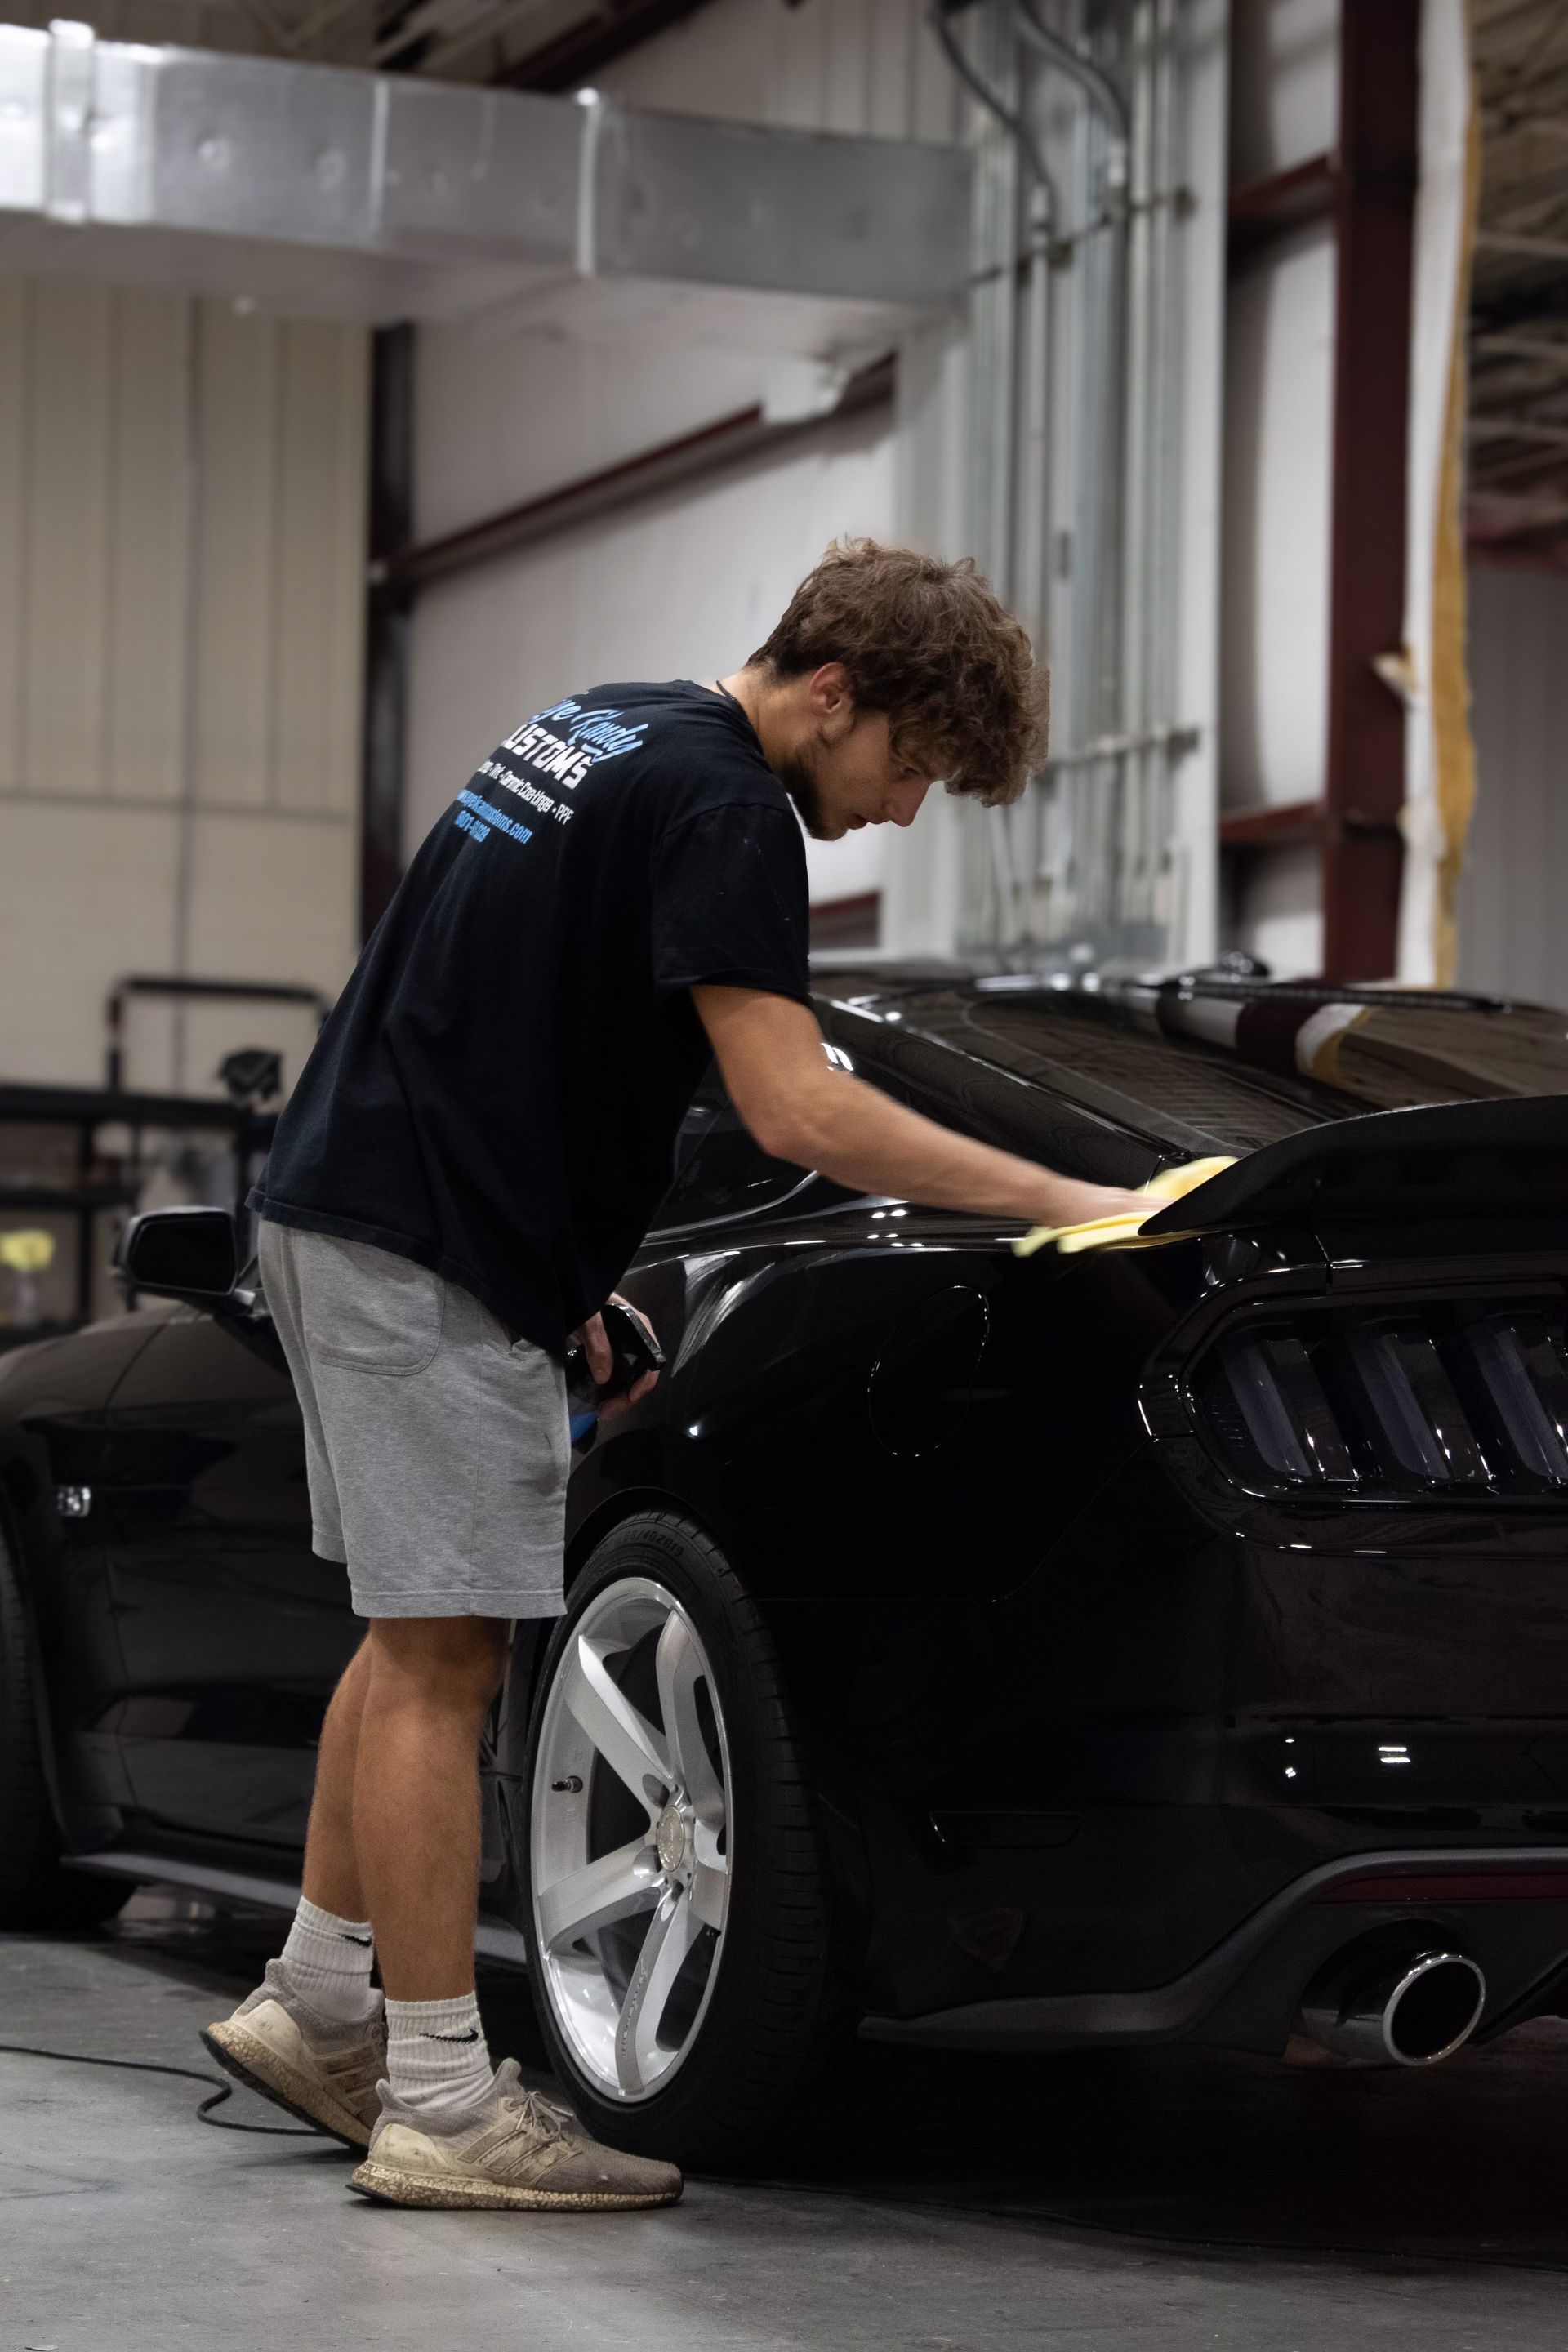 a man is polishing a black car in a garage .